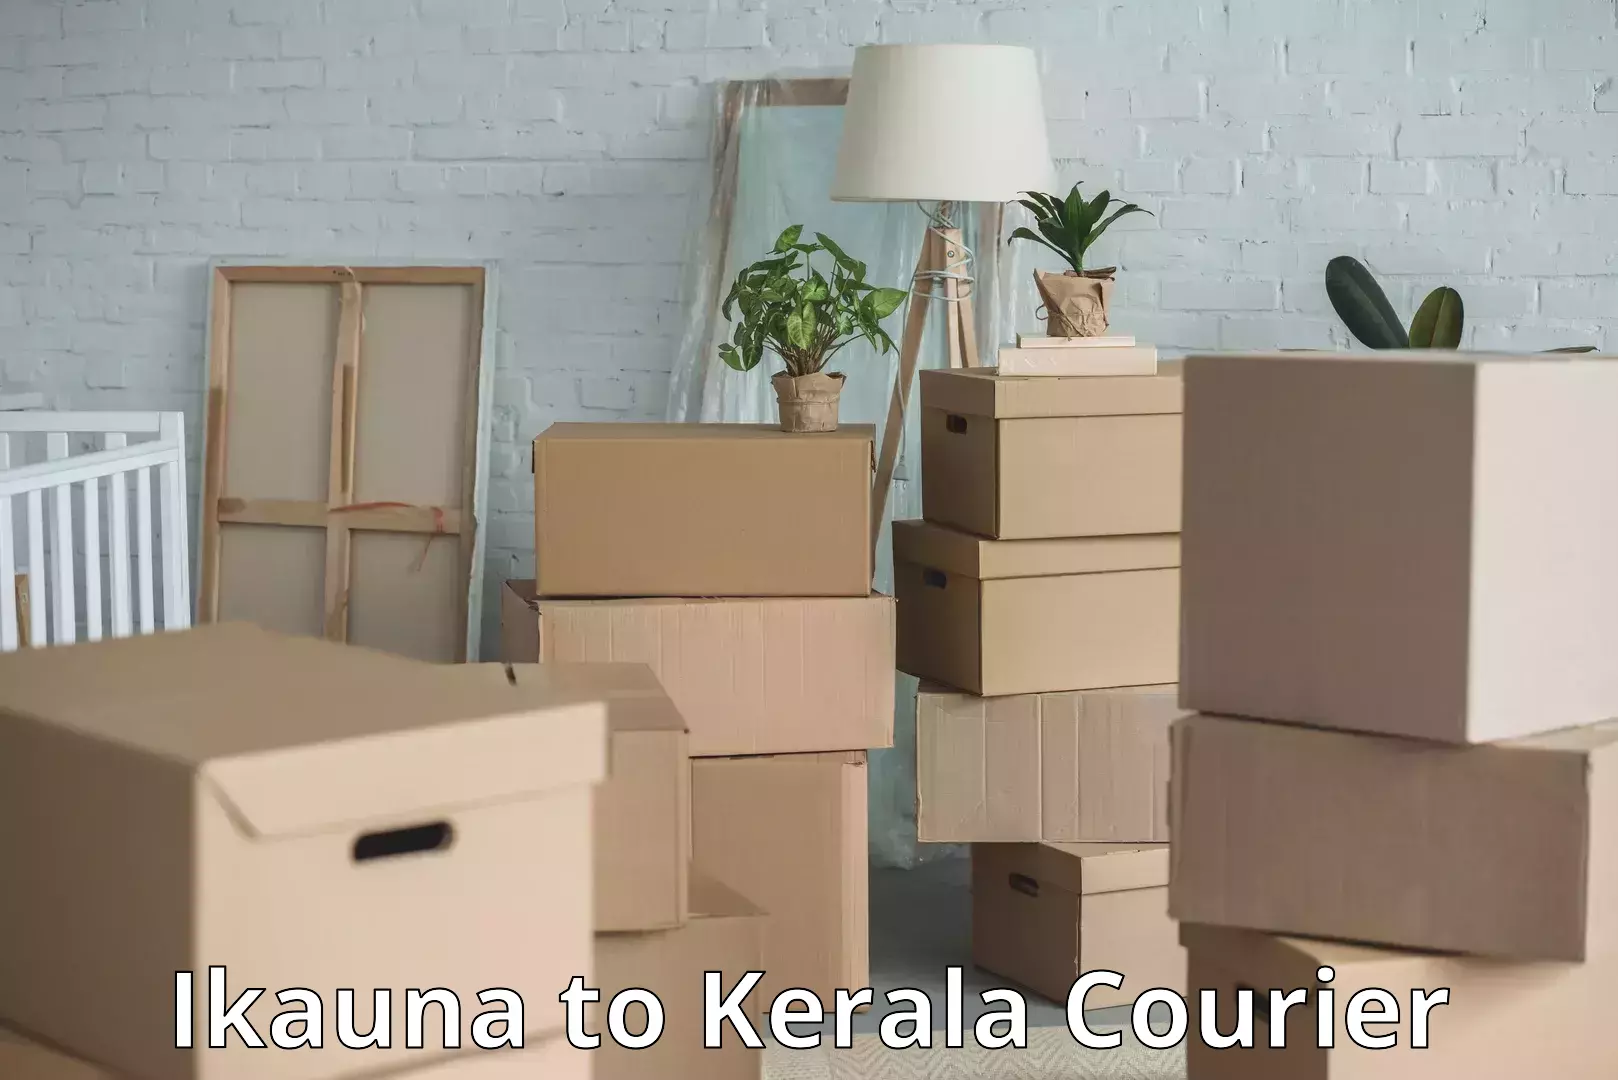 Luggage transfer service in Ikauna to Kerala